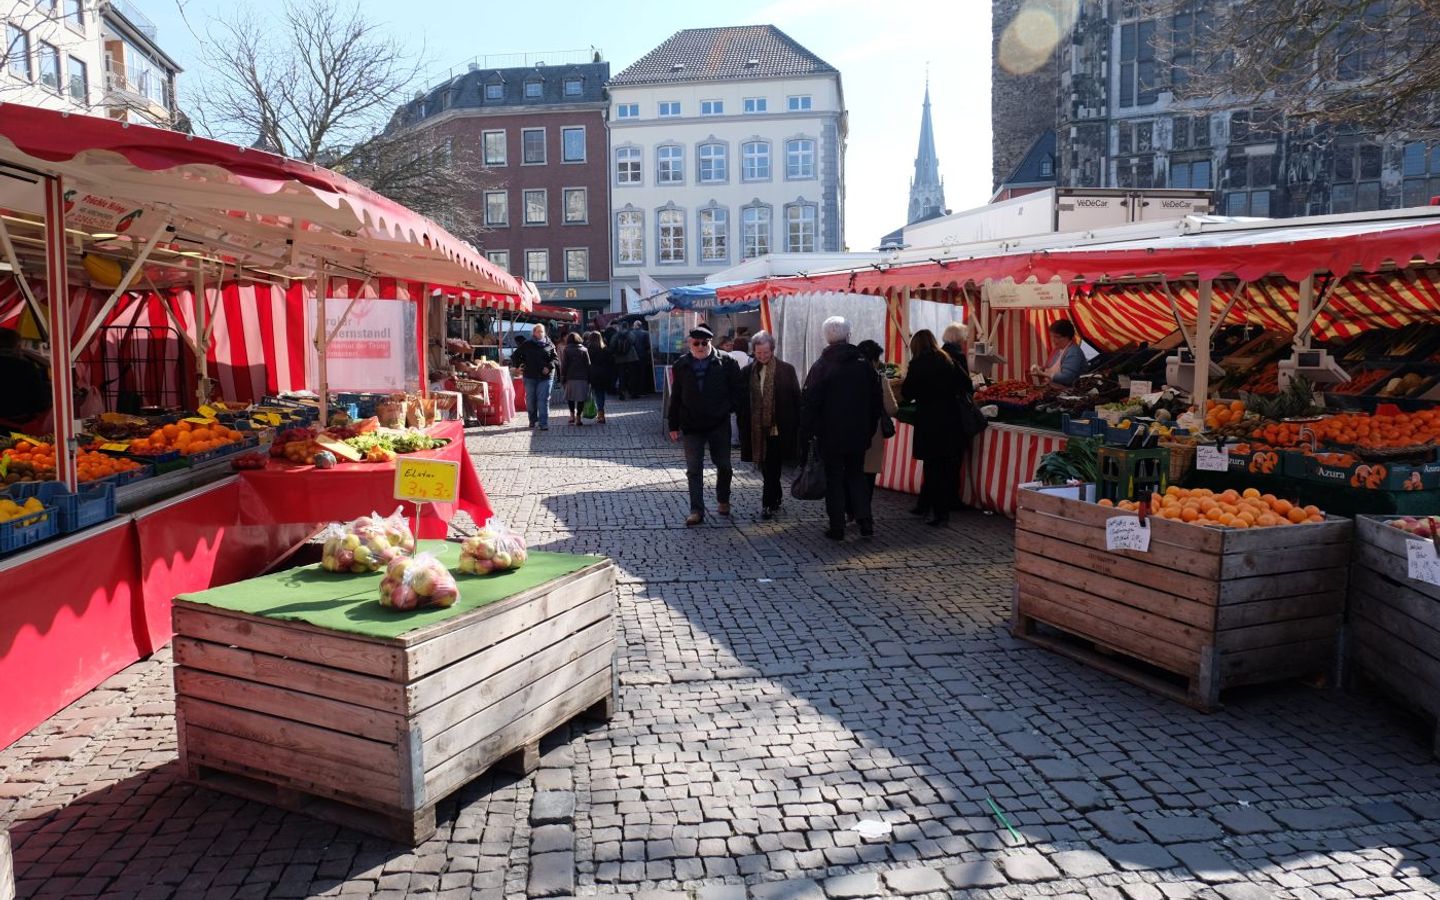 Wochenmarkt am Aachener Marktplatz